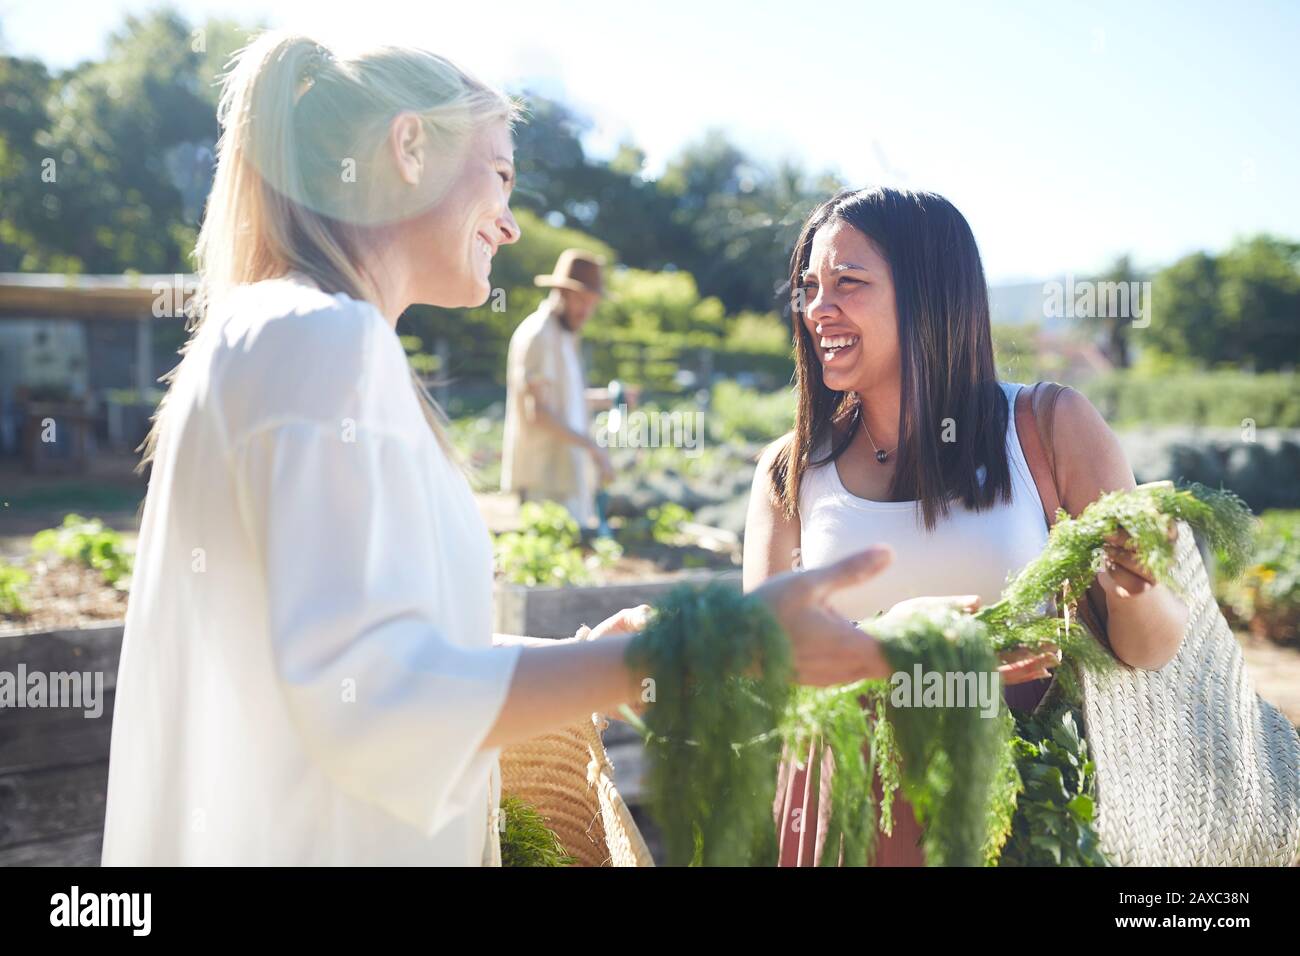 Des femmes souriantes récoltent des légumes dans un jardin ensoleillé Banque D'Images